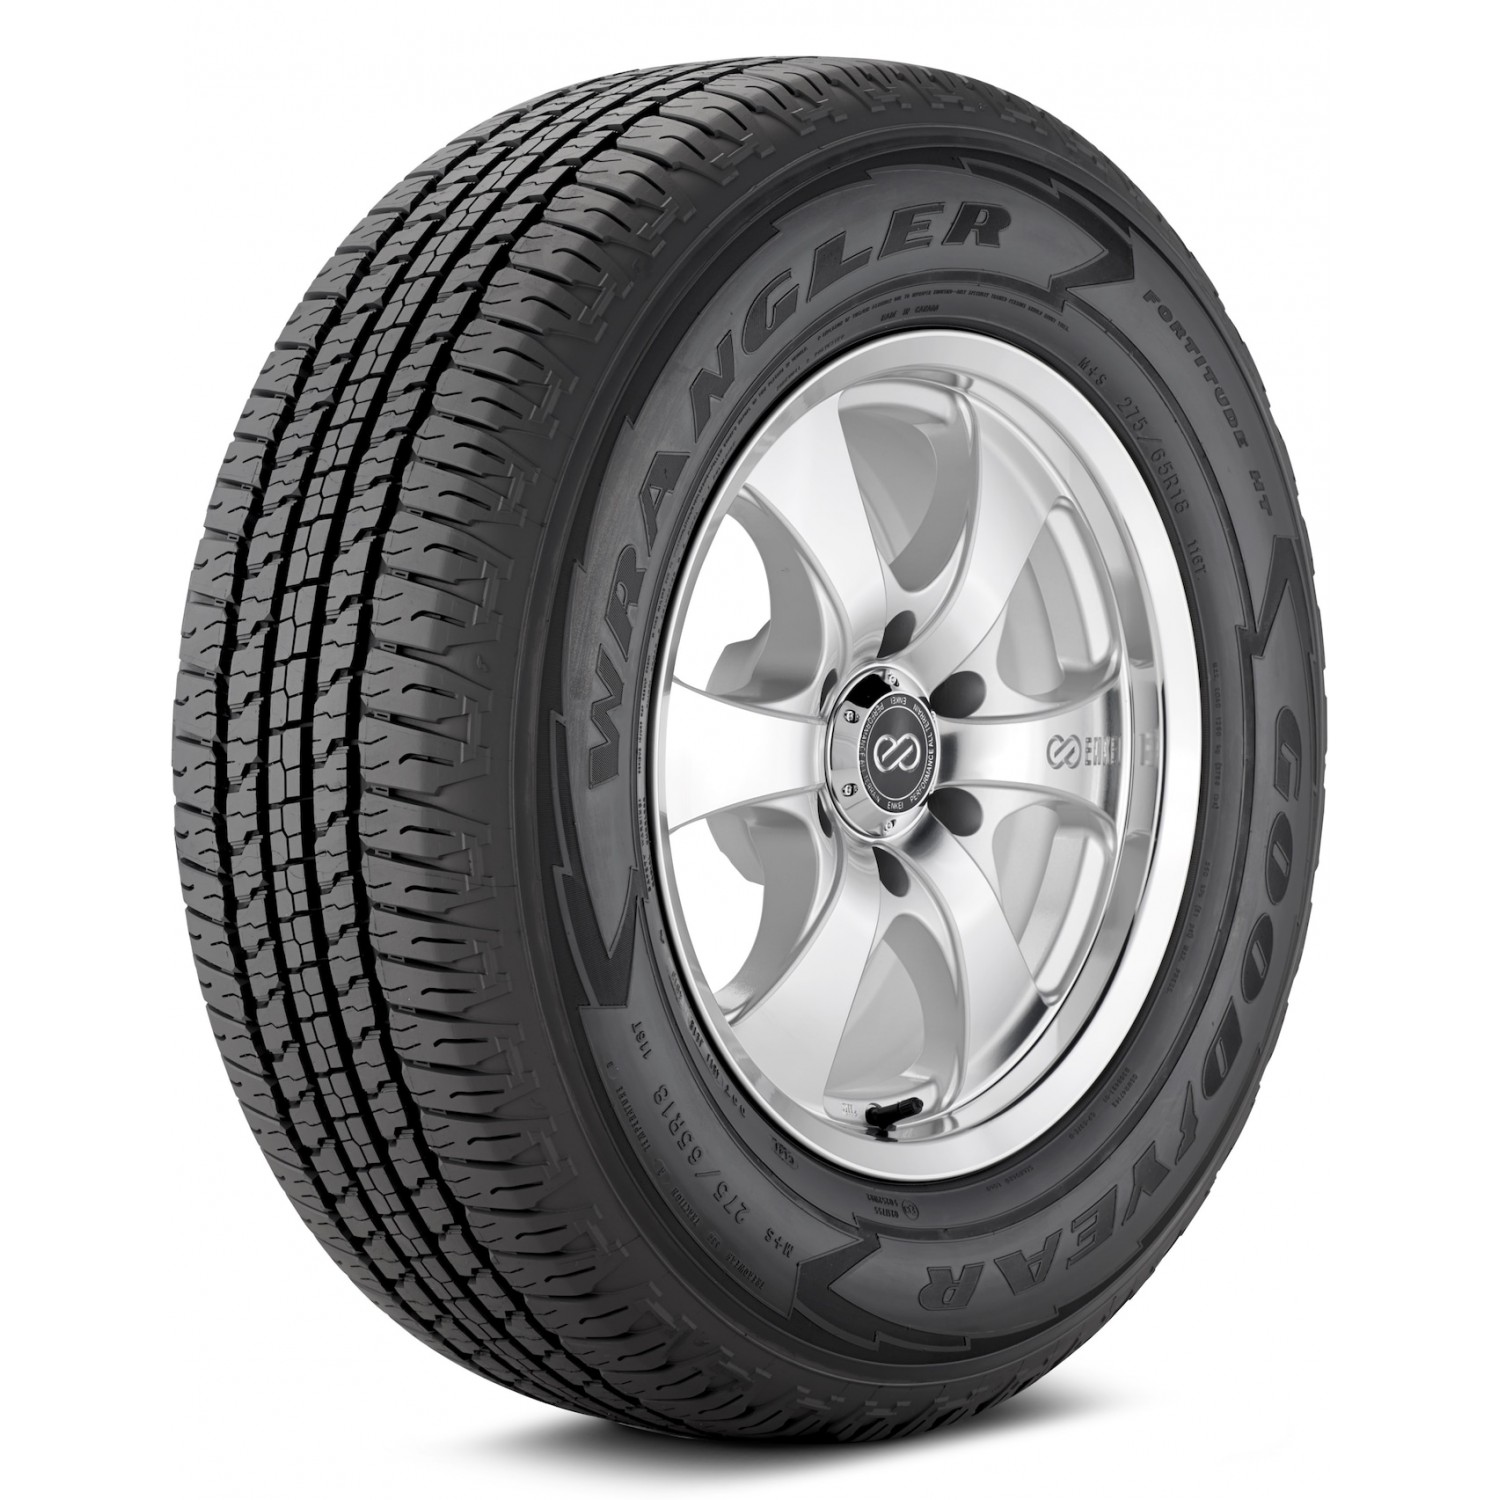 Goodyear Wrangler Fortitude HT Black Sidewall Tire (235/70R16 106T)  vzn121207